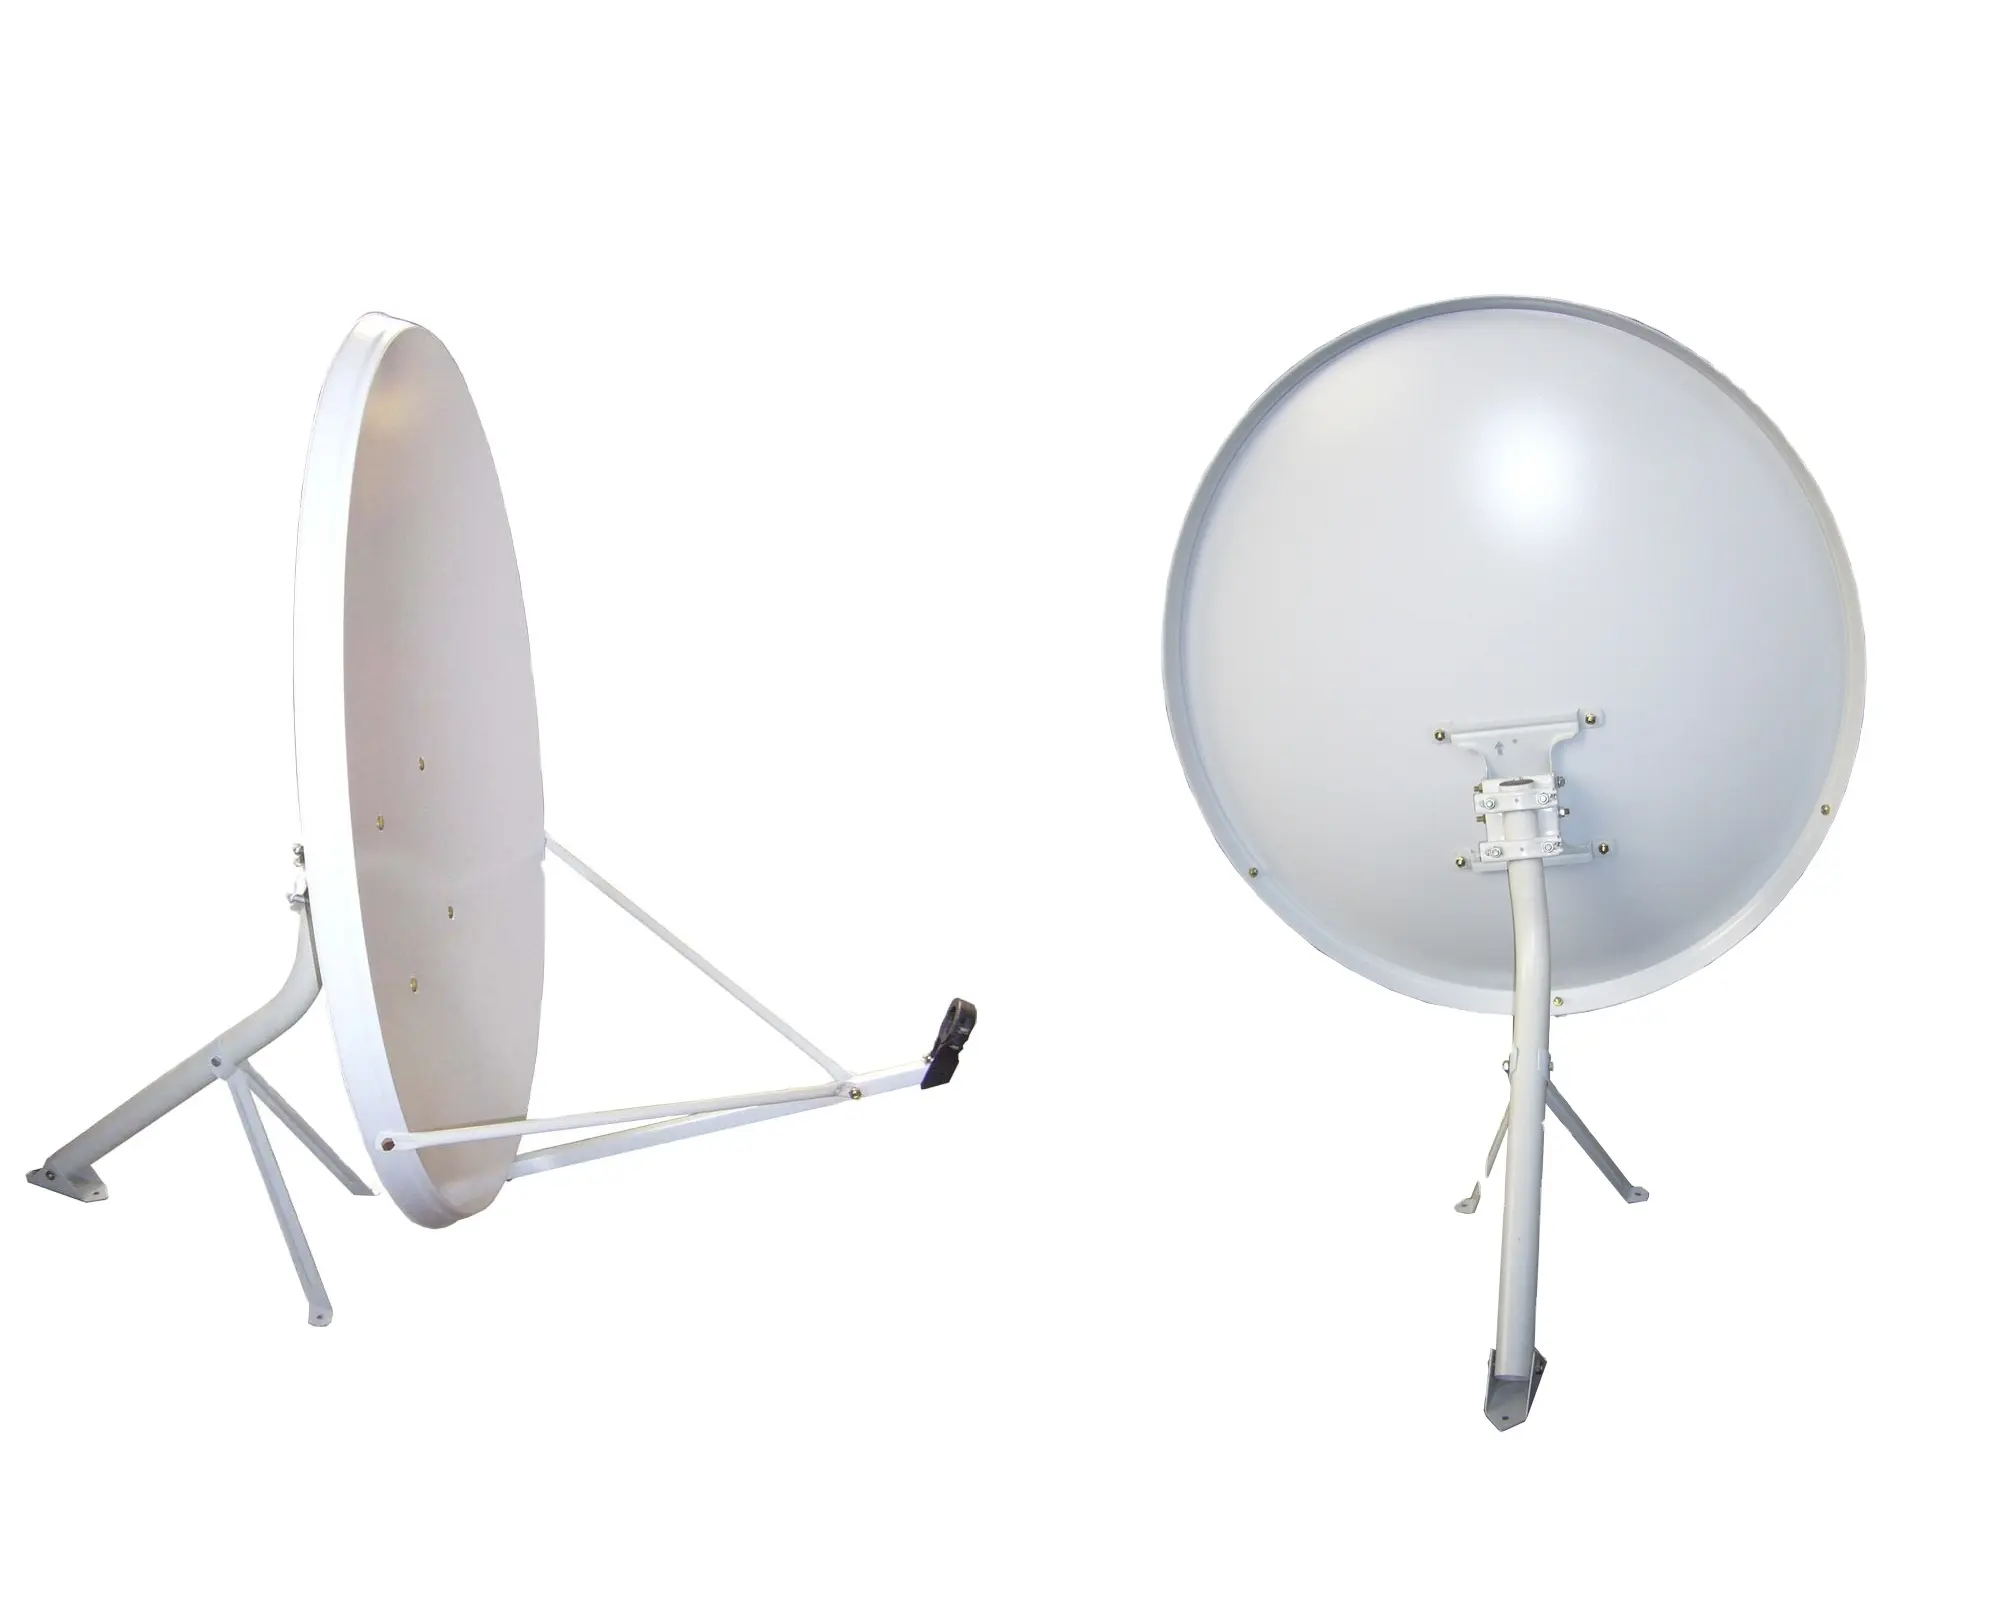 Bande ku Offres Spéciales 90cm eurostar meilleure antenne parabolique satellite